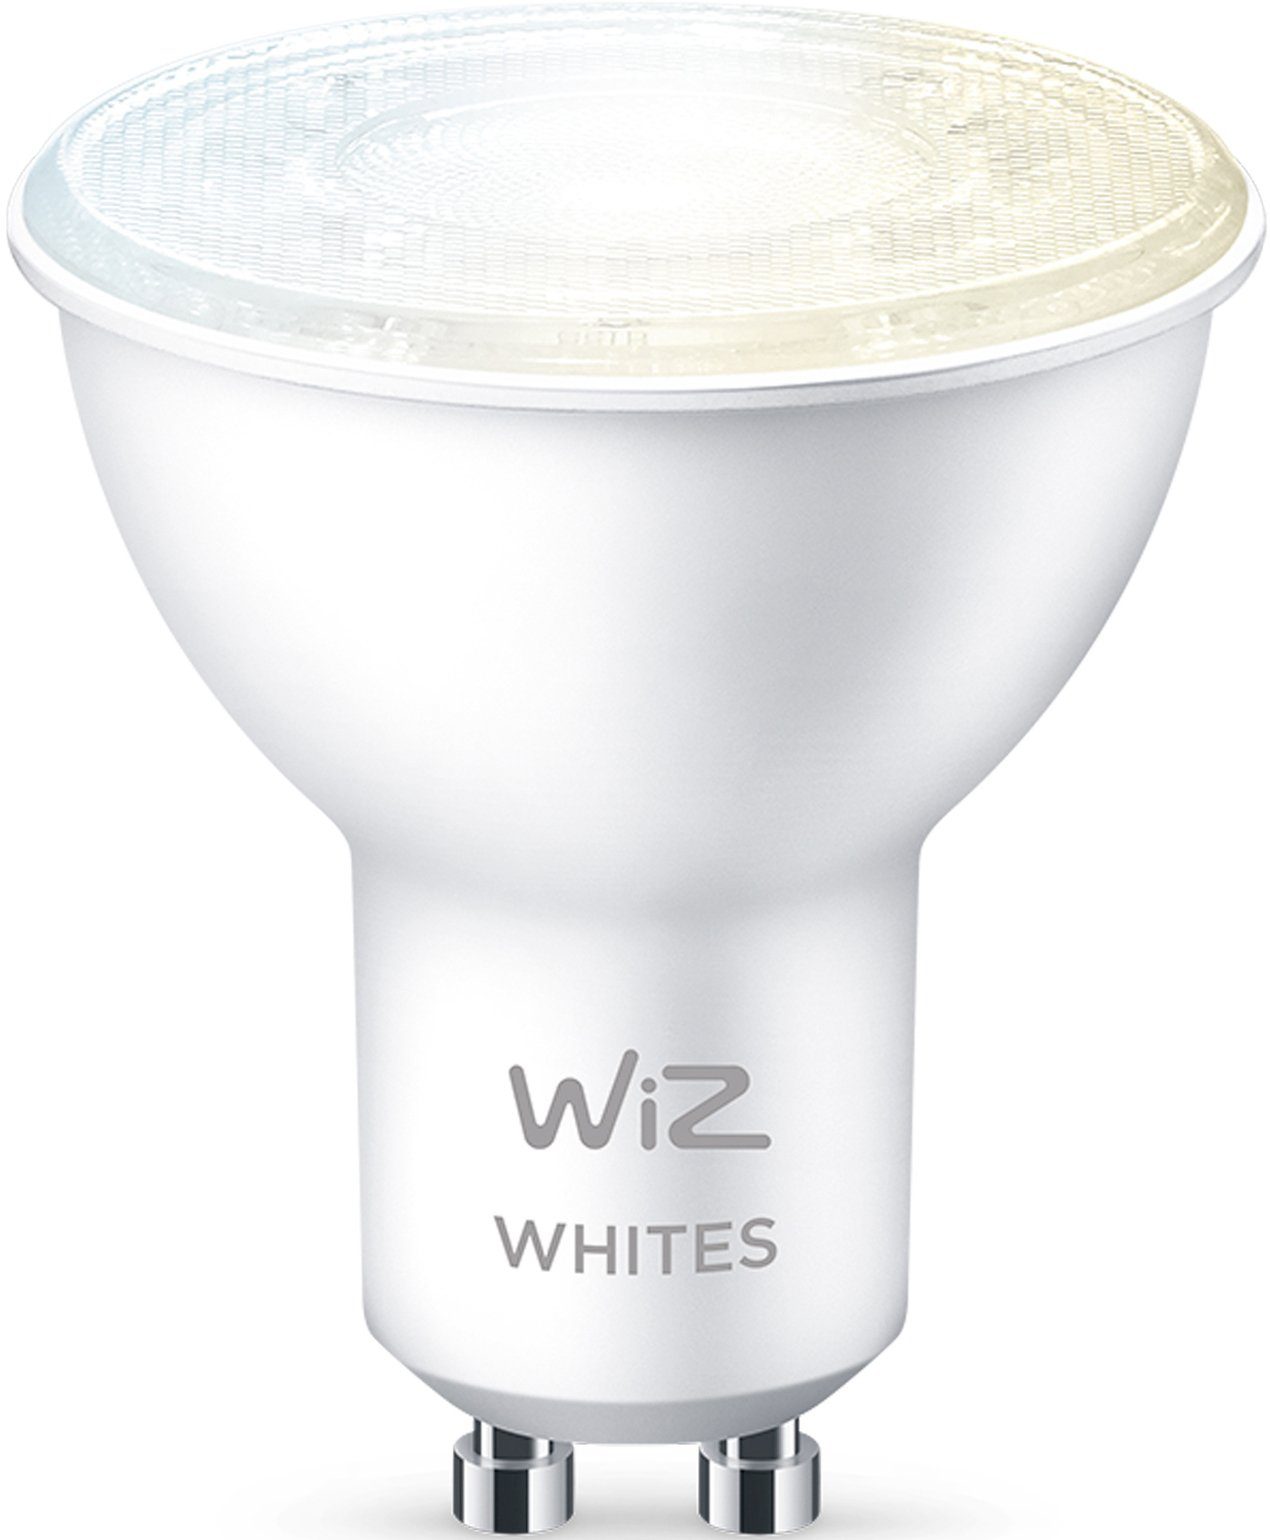 WiZ LED-Leuchtmittel White 50W GU10 1 Beleuchtung mit GU10, White Spot St., Warmweiß, Einzelpack, LED matt smarte Tunable Wiz Tunable Sie Kreieren Lampen